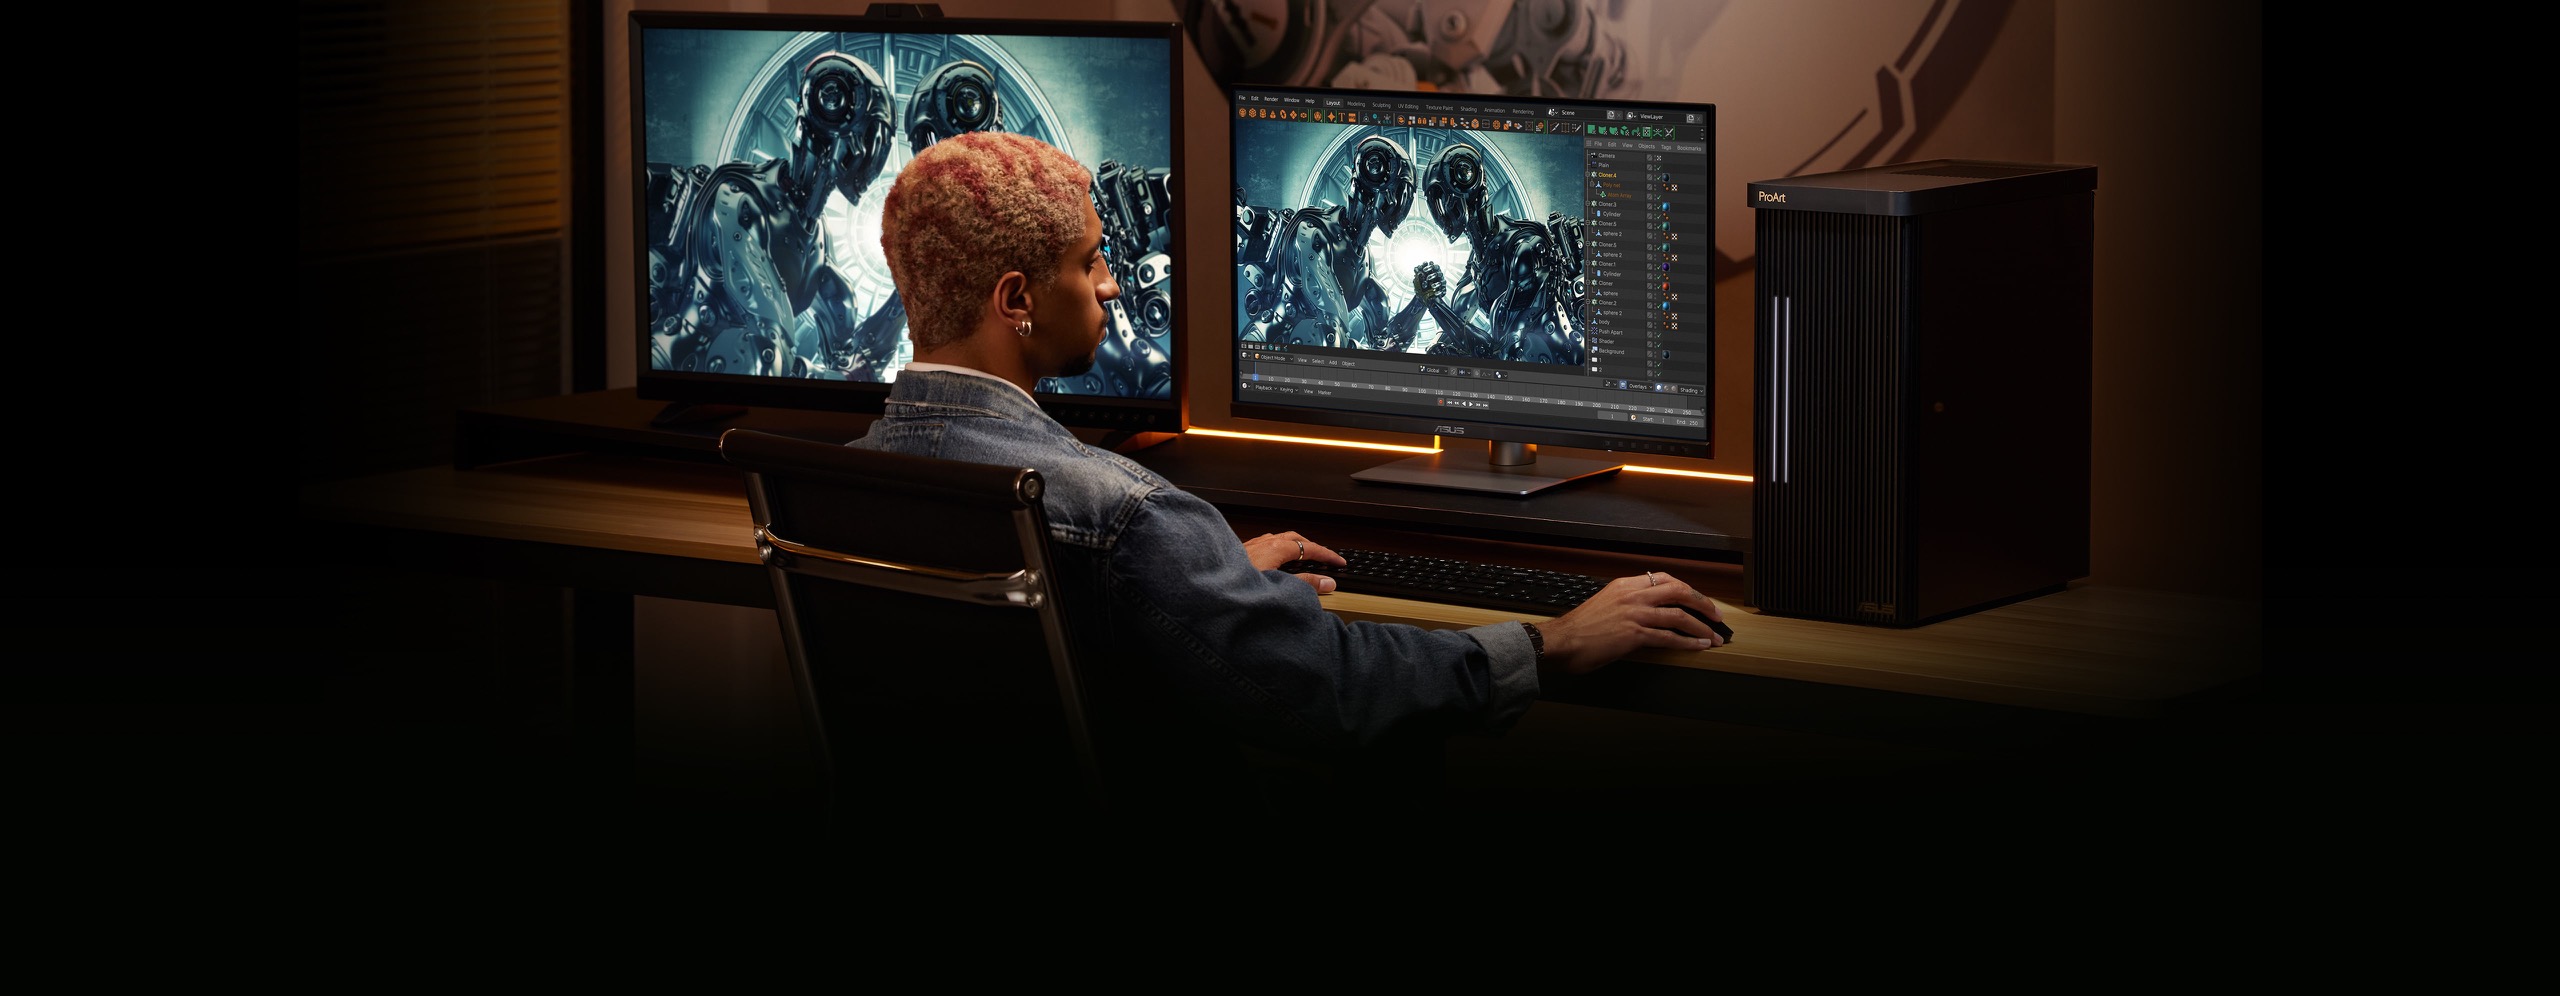 Một người đàn ông đang ngồi trên ghế trong khi cầm chuột và gõ bàn phím với màn hình ngoài ở bên trái và máy tính PC ở giữa, và máy trạm ở bên phải của bàn làm việc. Một bức trang được treo trên tường phía trước bàn làm việc.